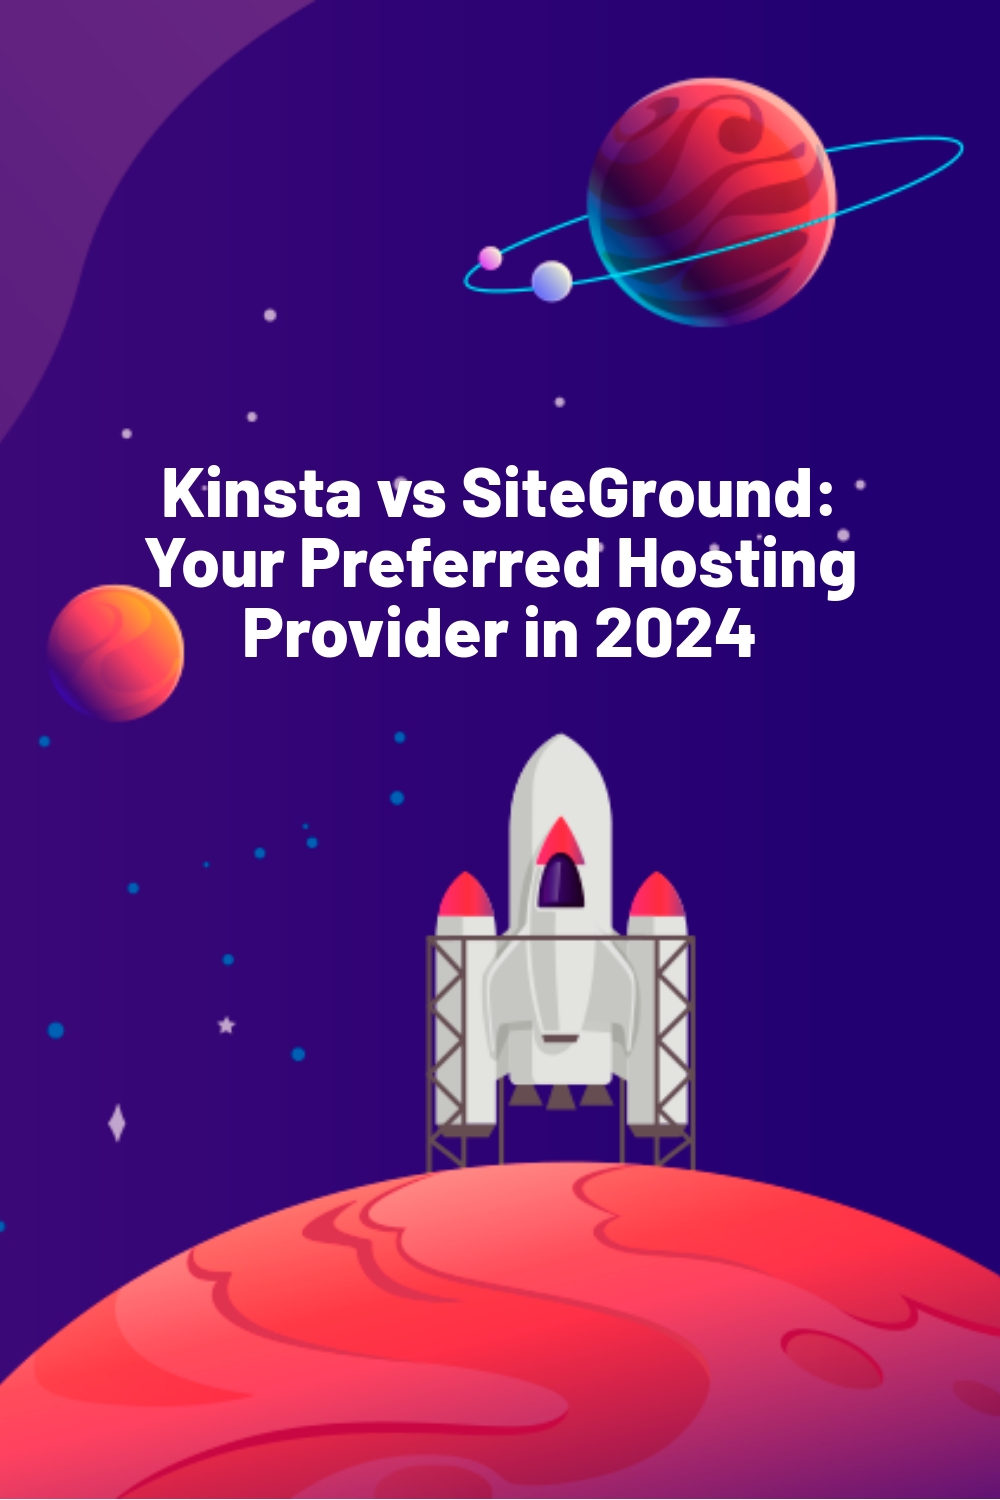 Kinsta vs SiteGround: Your Preferred Hosting Provider in 2024